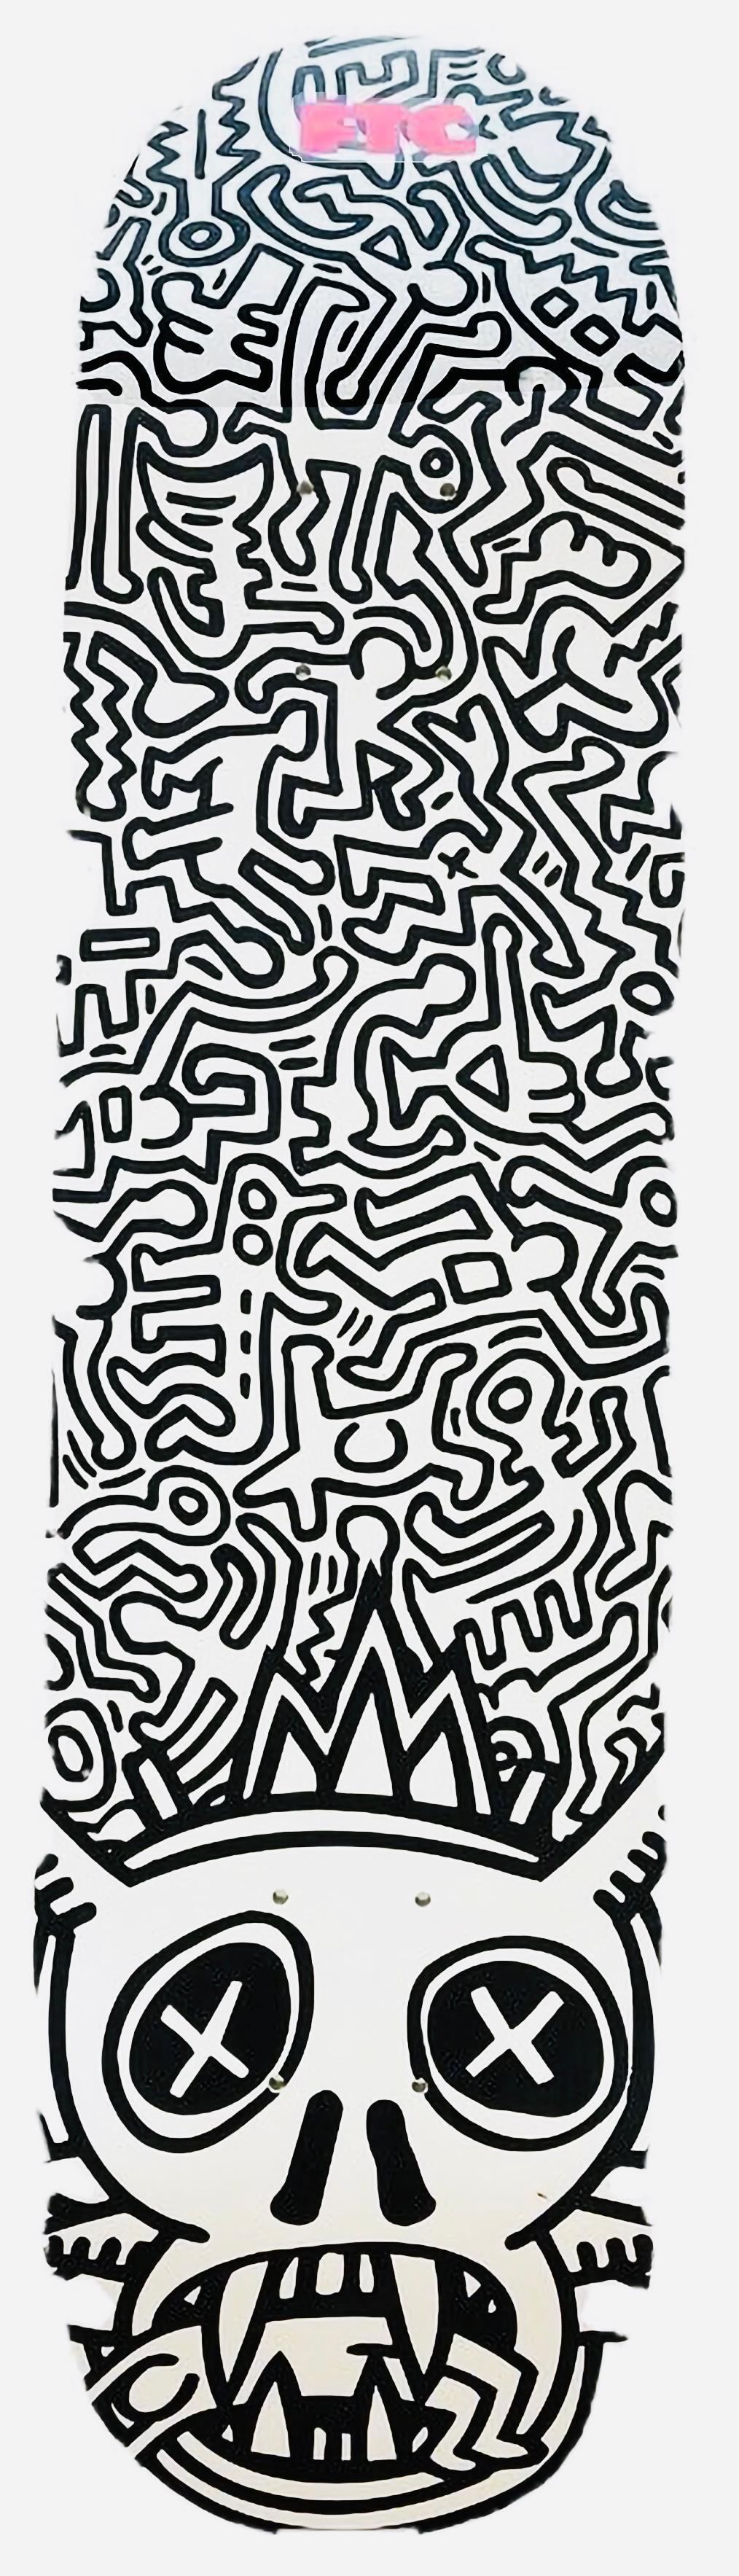 Voiture de skateboard vintage Keith Haring (Keith Haring Voiture de skateboard) - Print de (after) Keith Haring